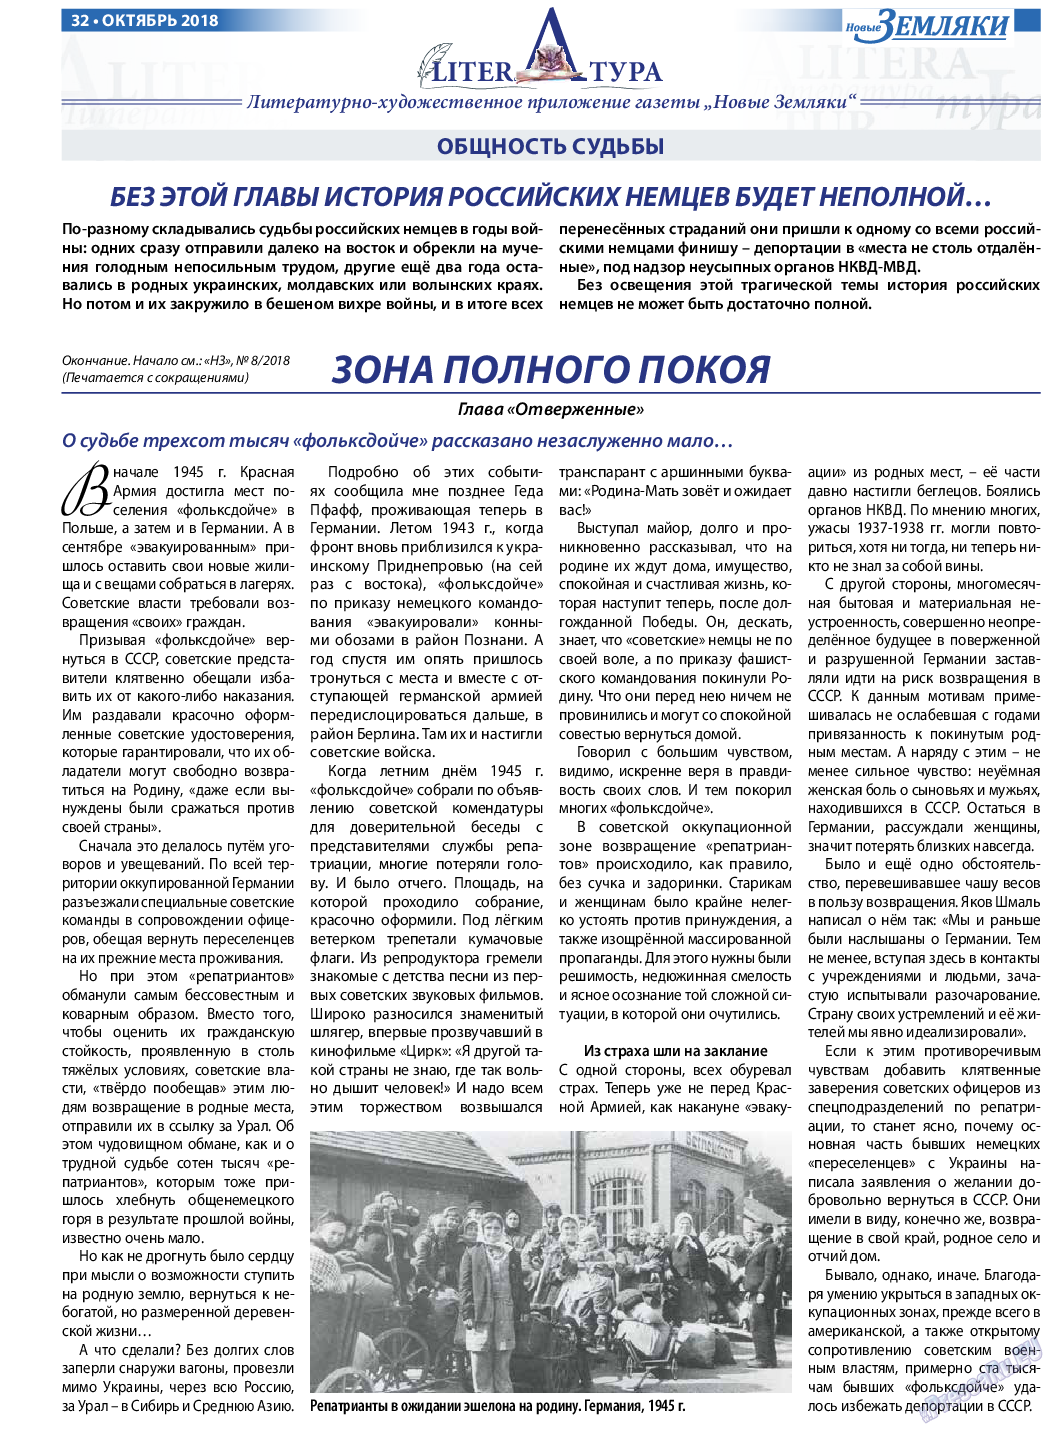 Новые Земляки, газета. 2018 №10 стр.32